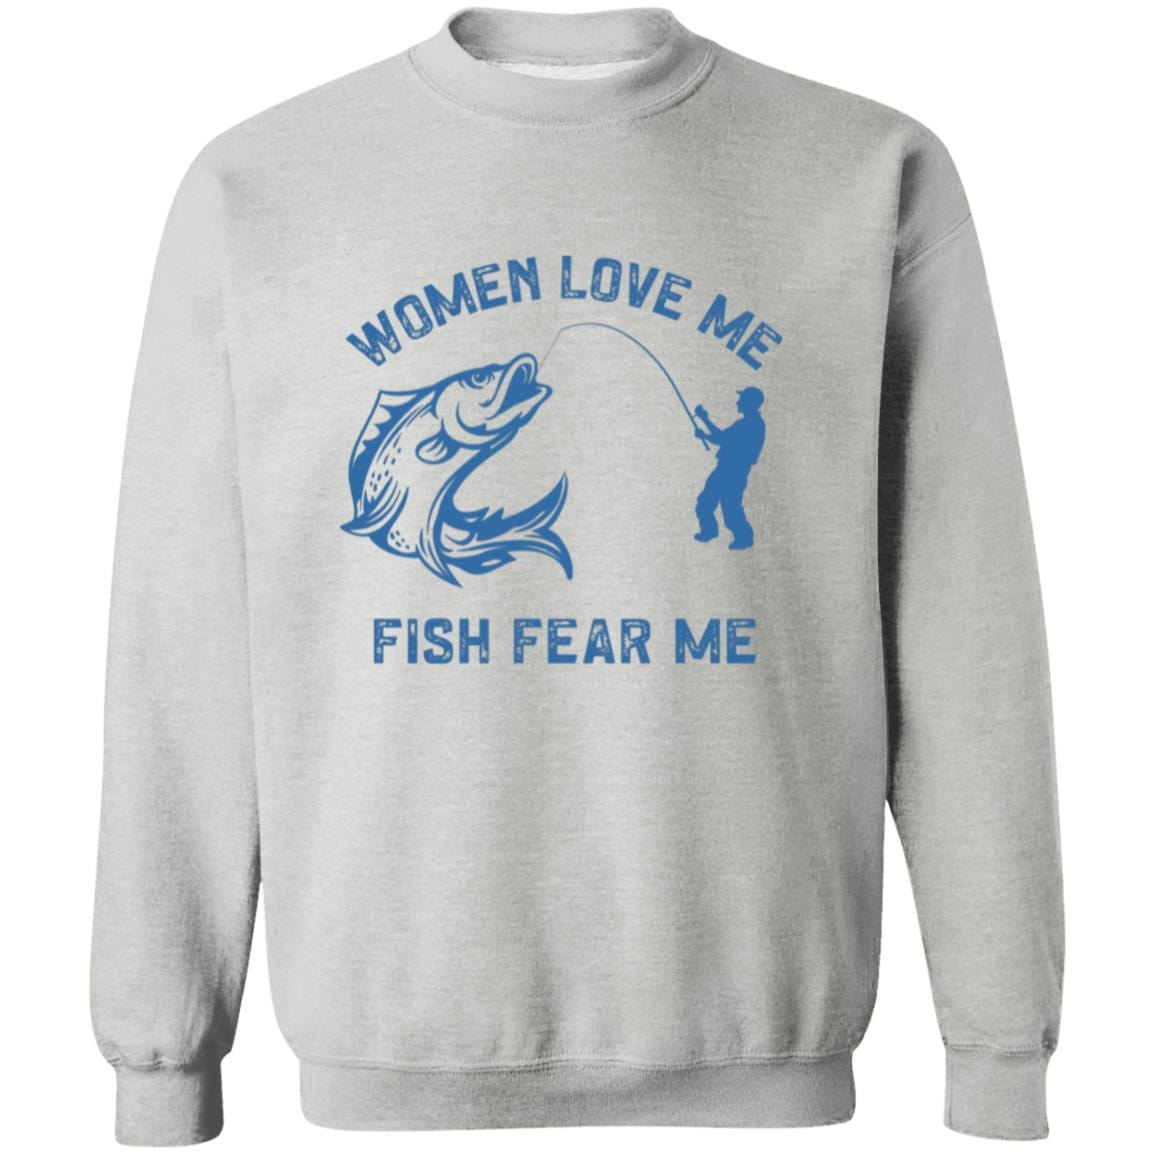 Women Love Me, Fish Fear Me Sweatshirt